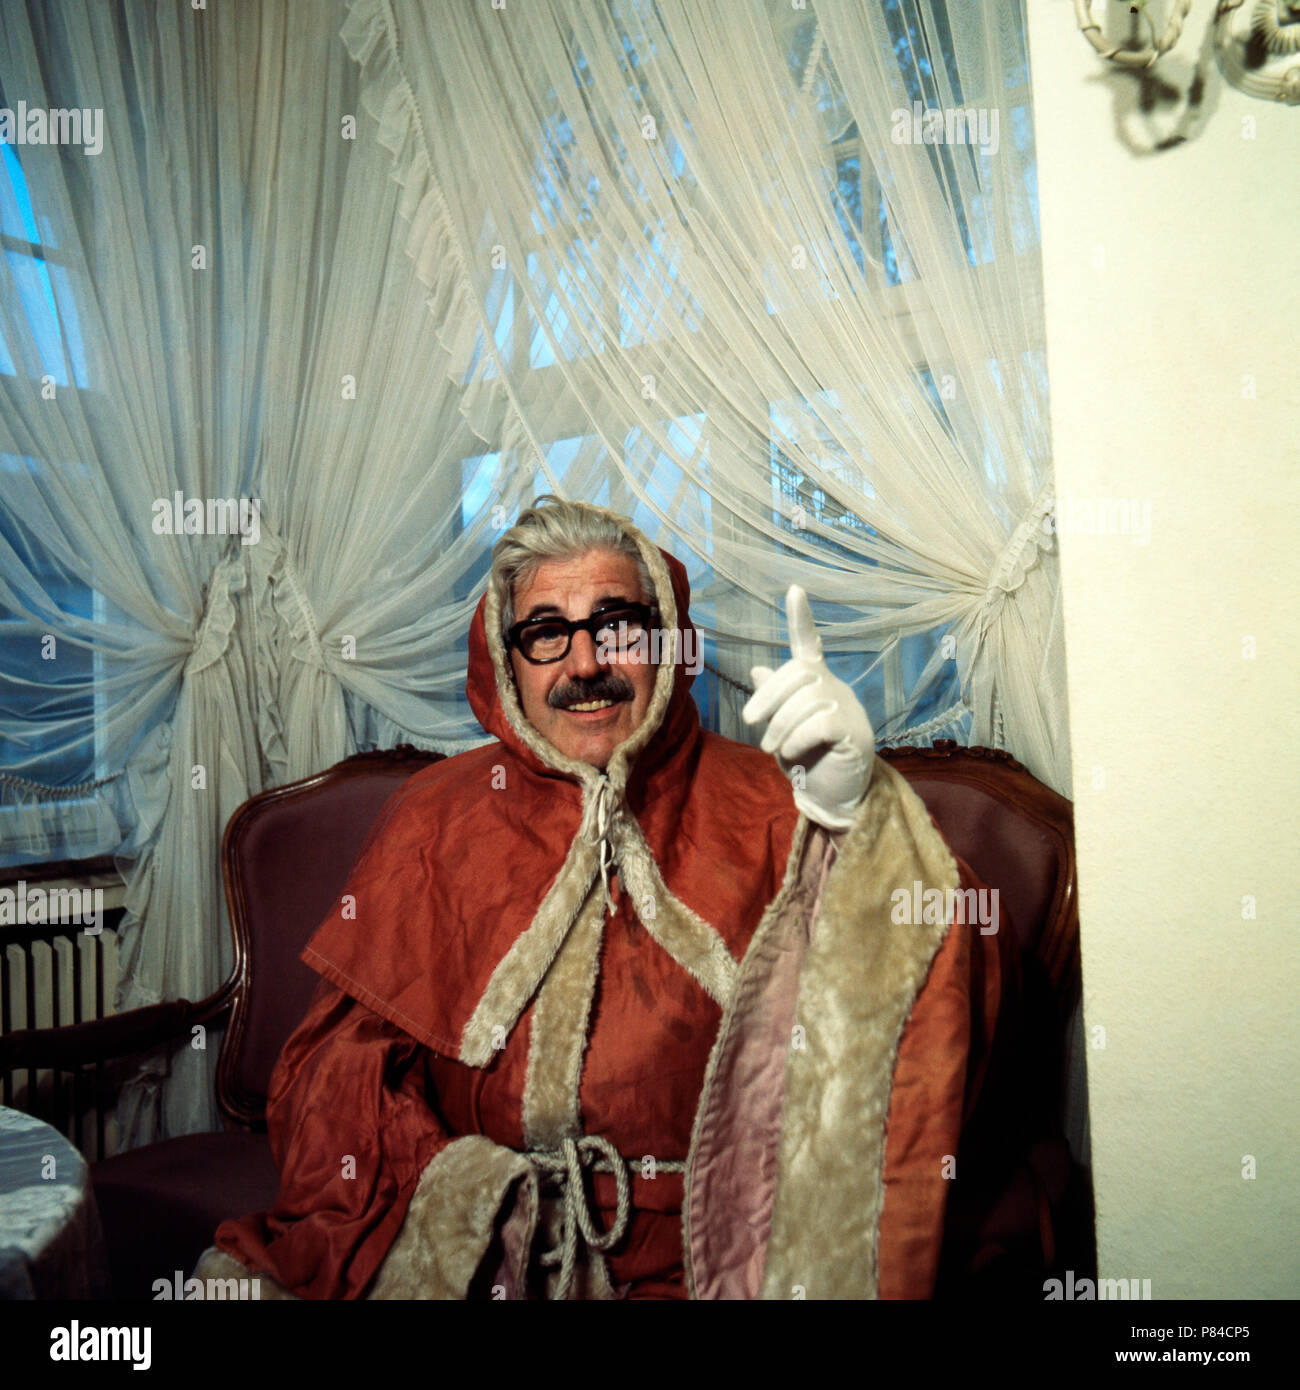 Volksschauspieler Willy Millowitsch als Weihnachtsmann in Köln, Deutschland 1966. Folklore actor Willy Millowitsch as Santa Clause at Cologne, Germany 1966. Stock Photo